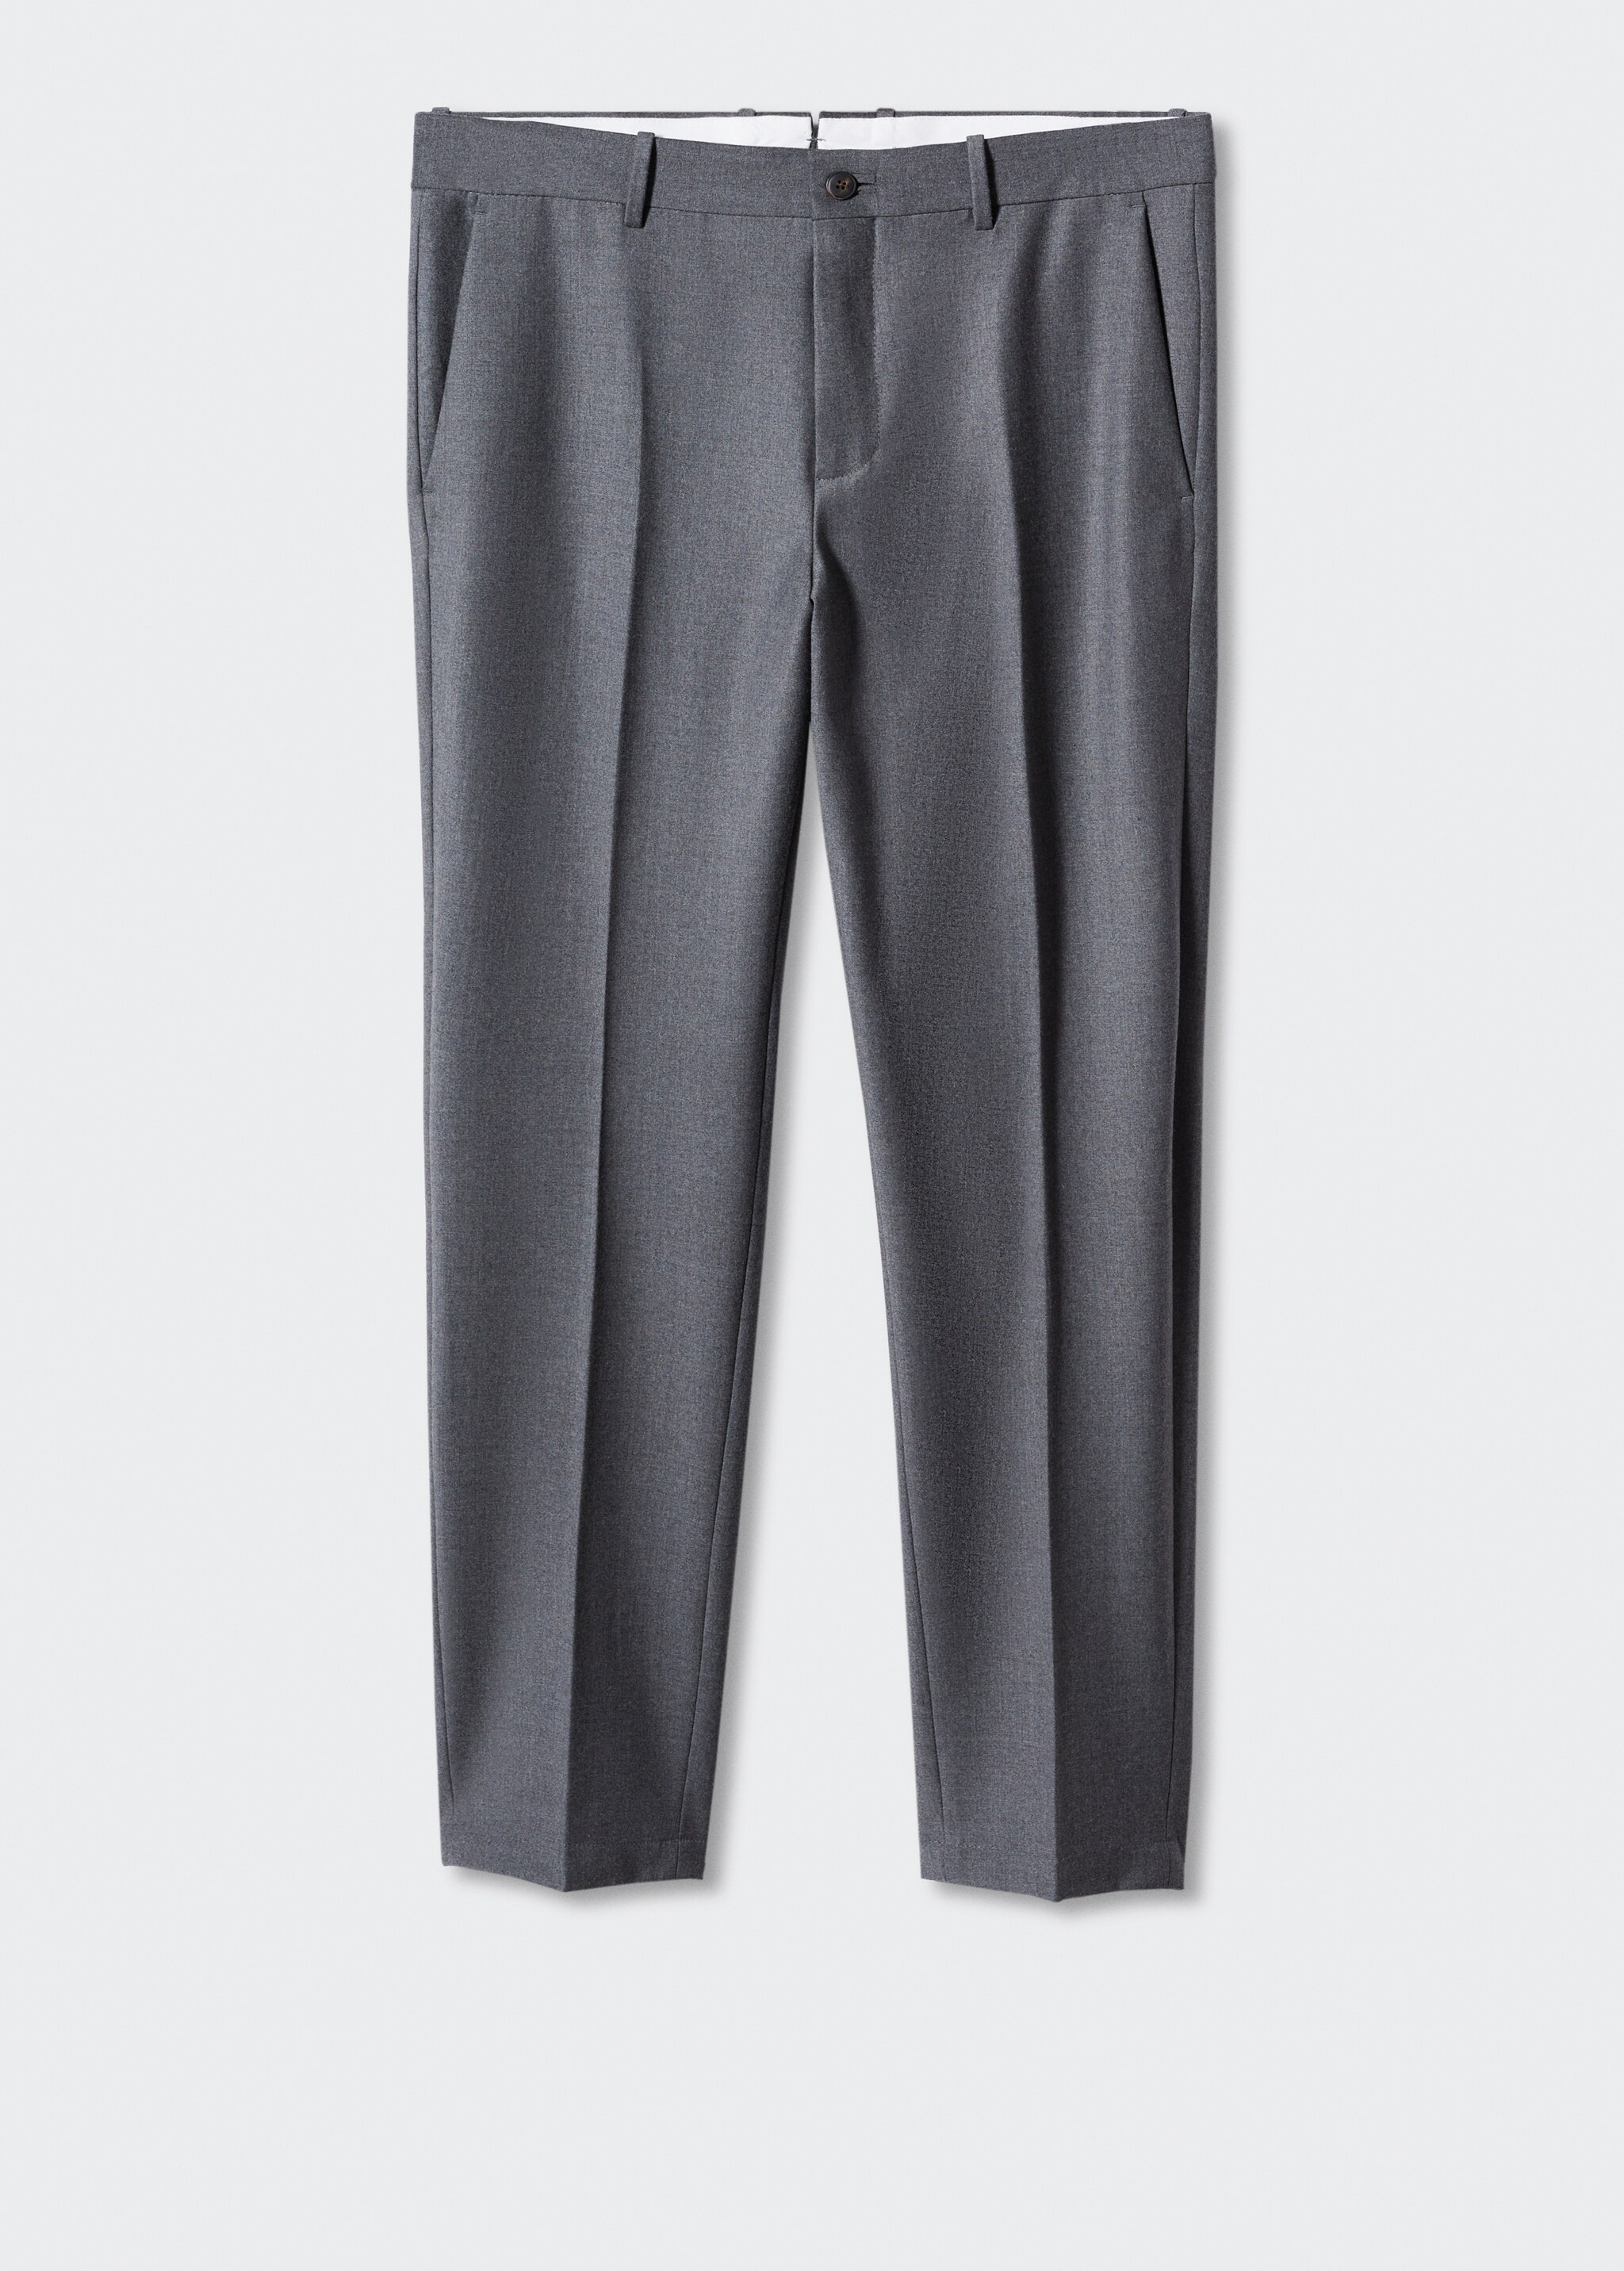 Pantalón slim fit lana - Artículo sin modelo